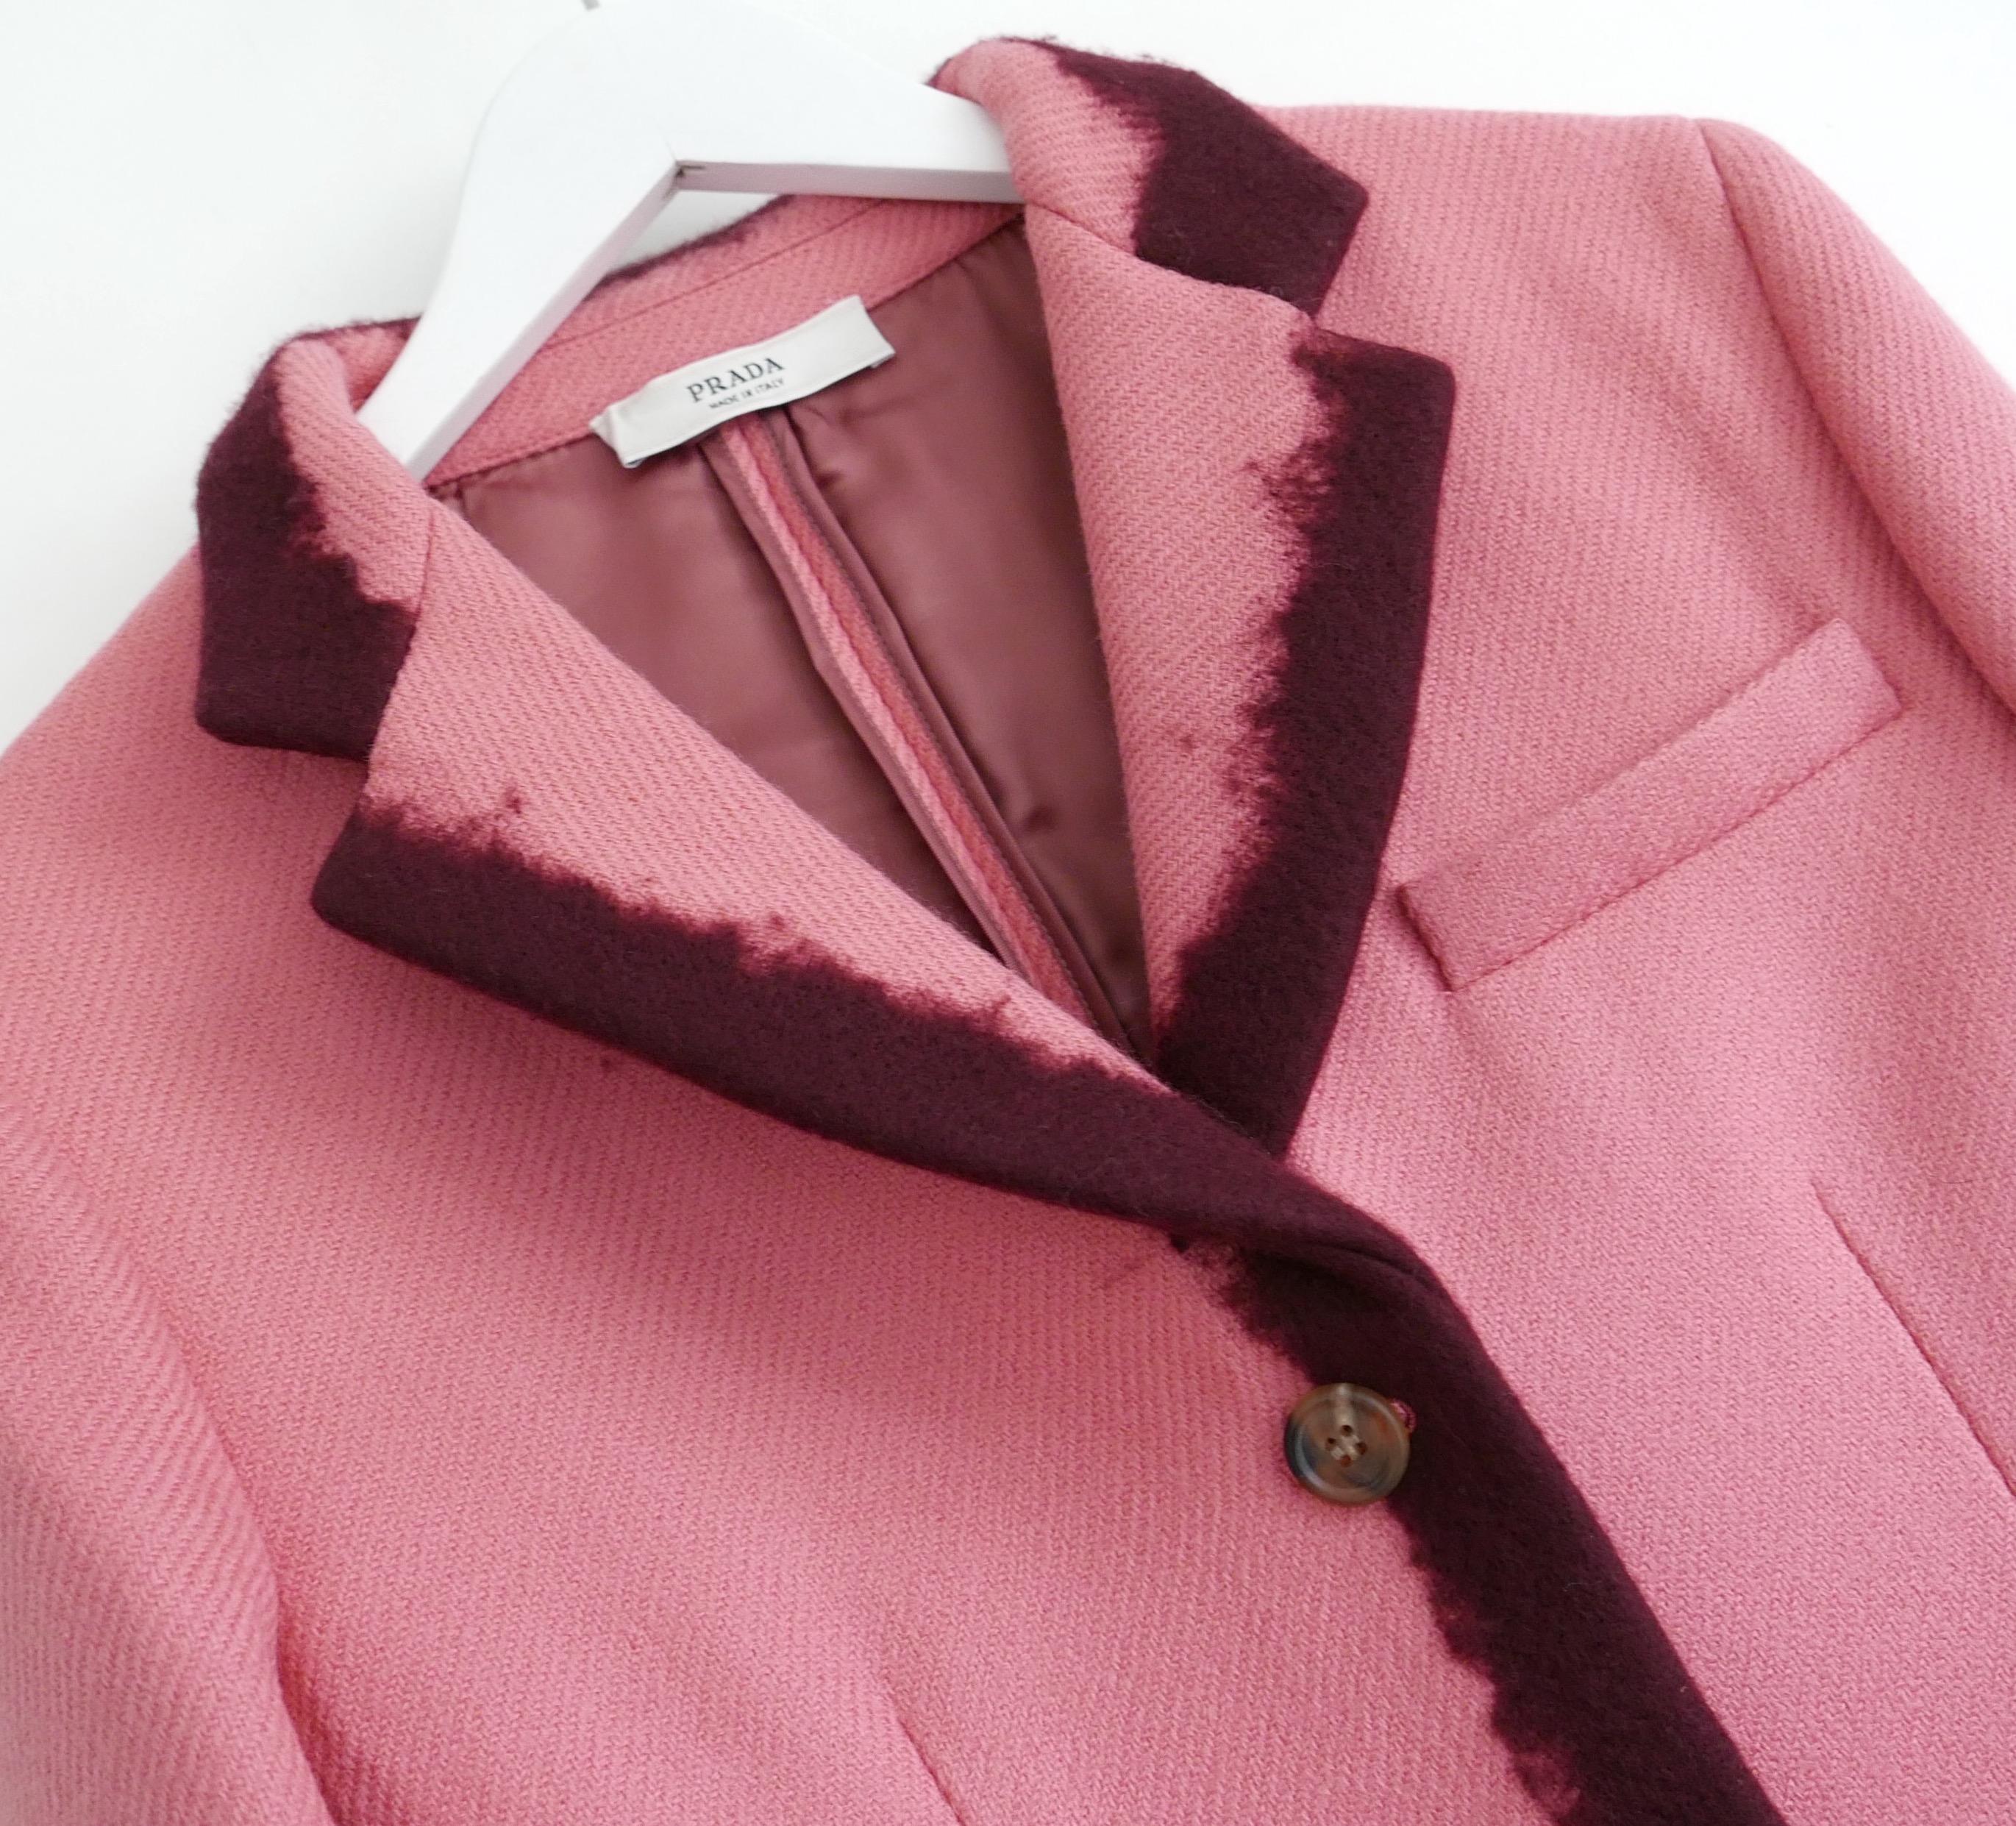 Superbe veste Prada Automne 2007 en état très rare, portée une seule fois. Réalisé en sergé de laine rose bubblegum avec des bordures ombrées en feutre appliquées à la main en bordeaux. Superbement taillé avec des hanches rembourrées, des poches à